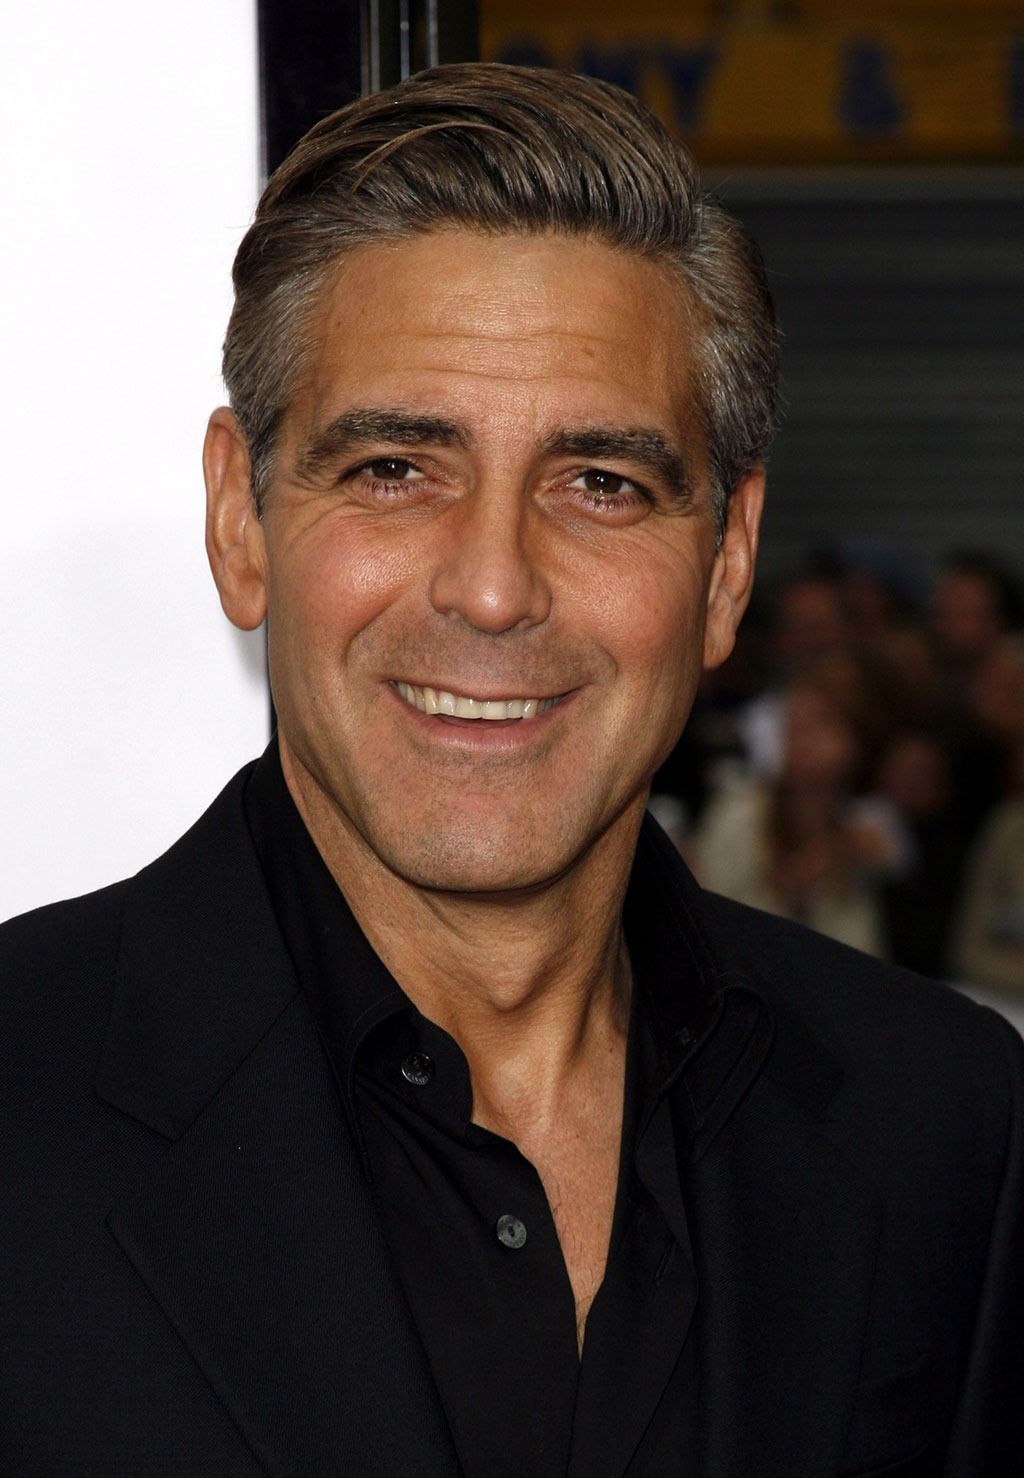 George Clooney julkkis unelma nainen